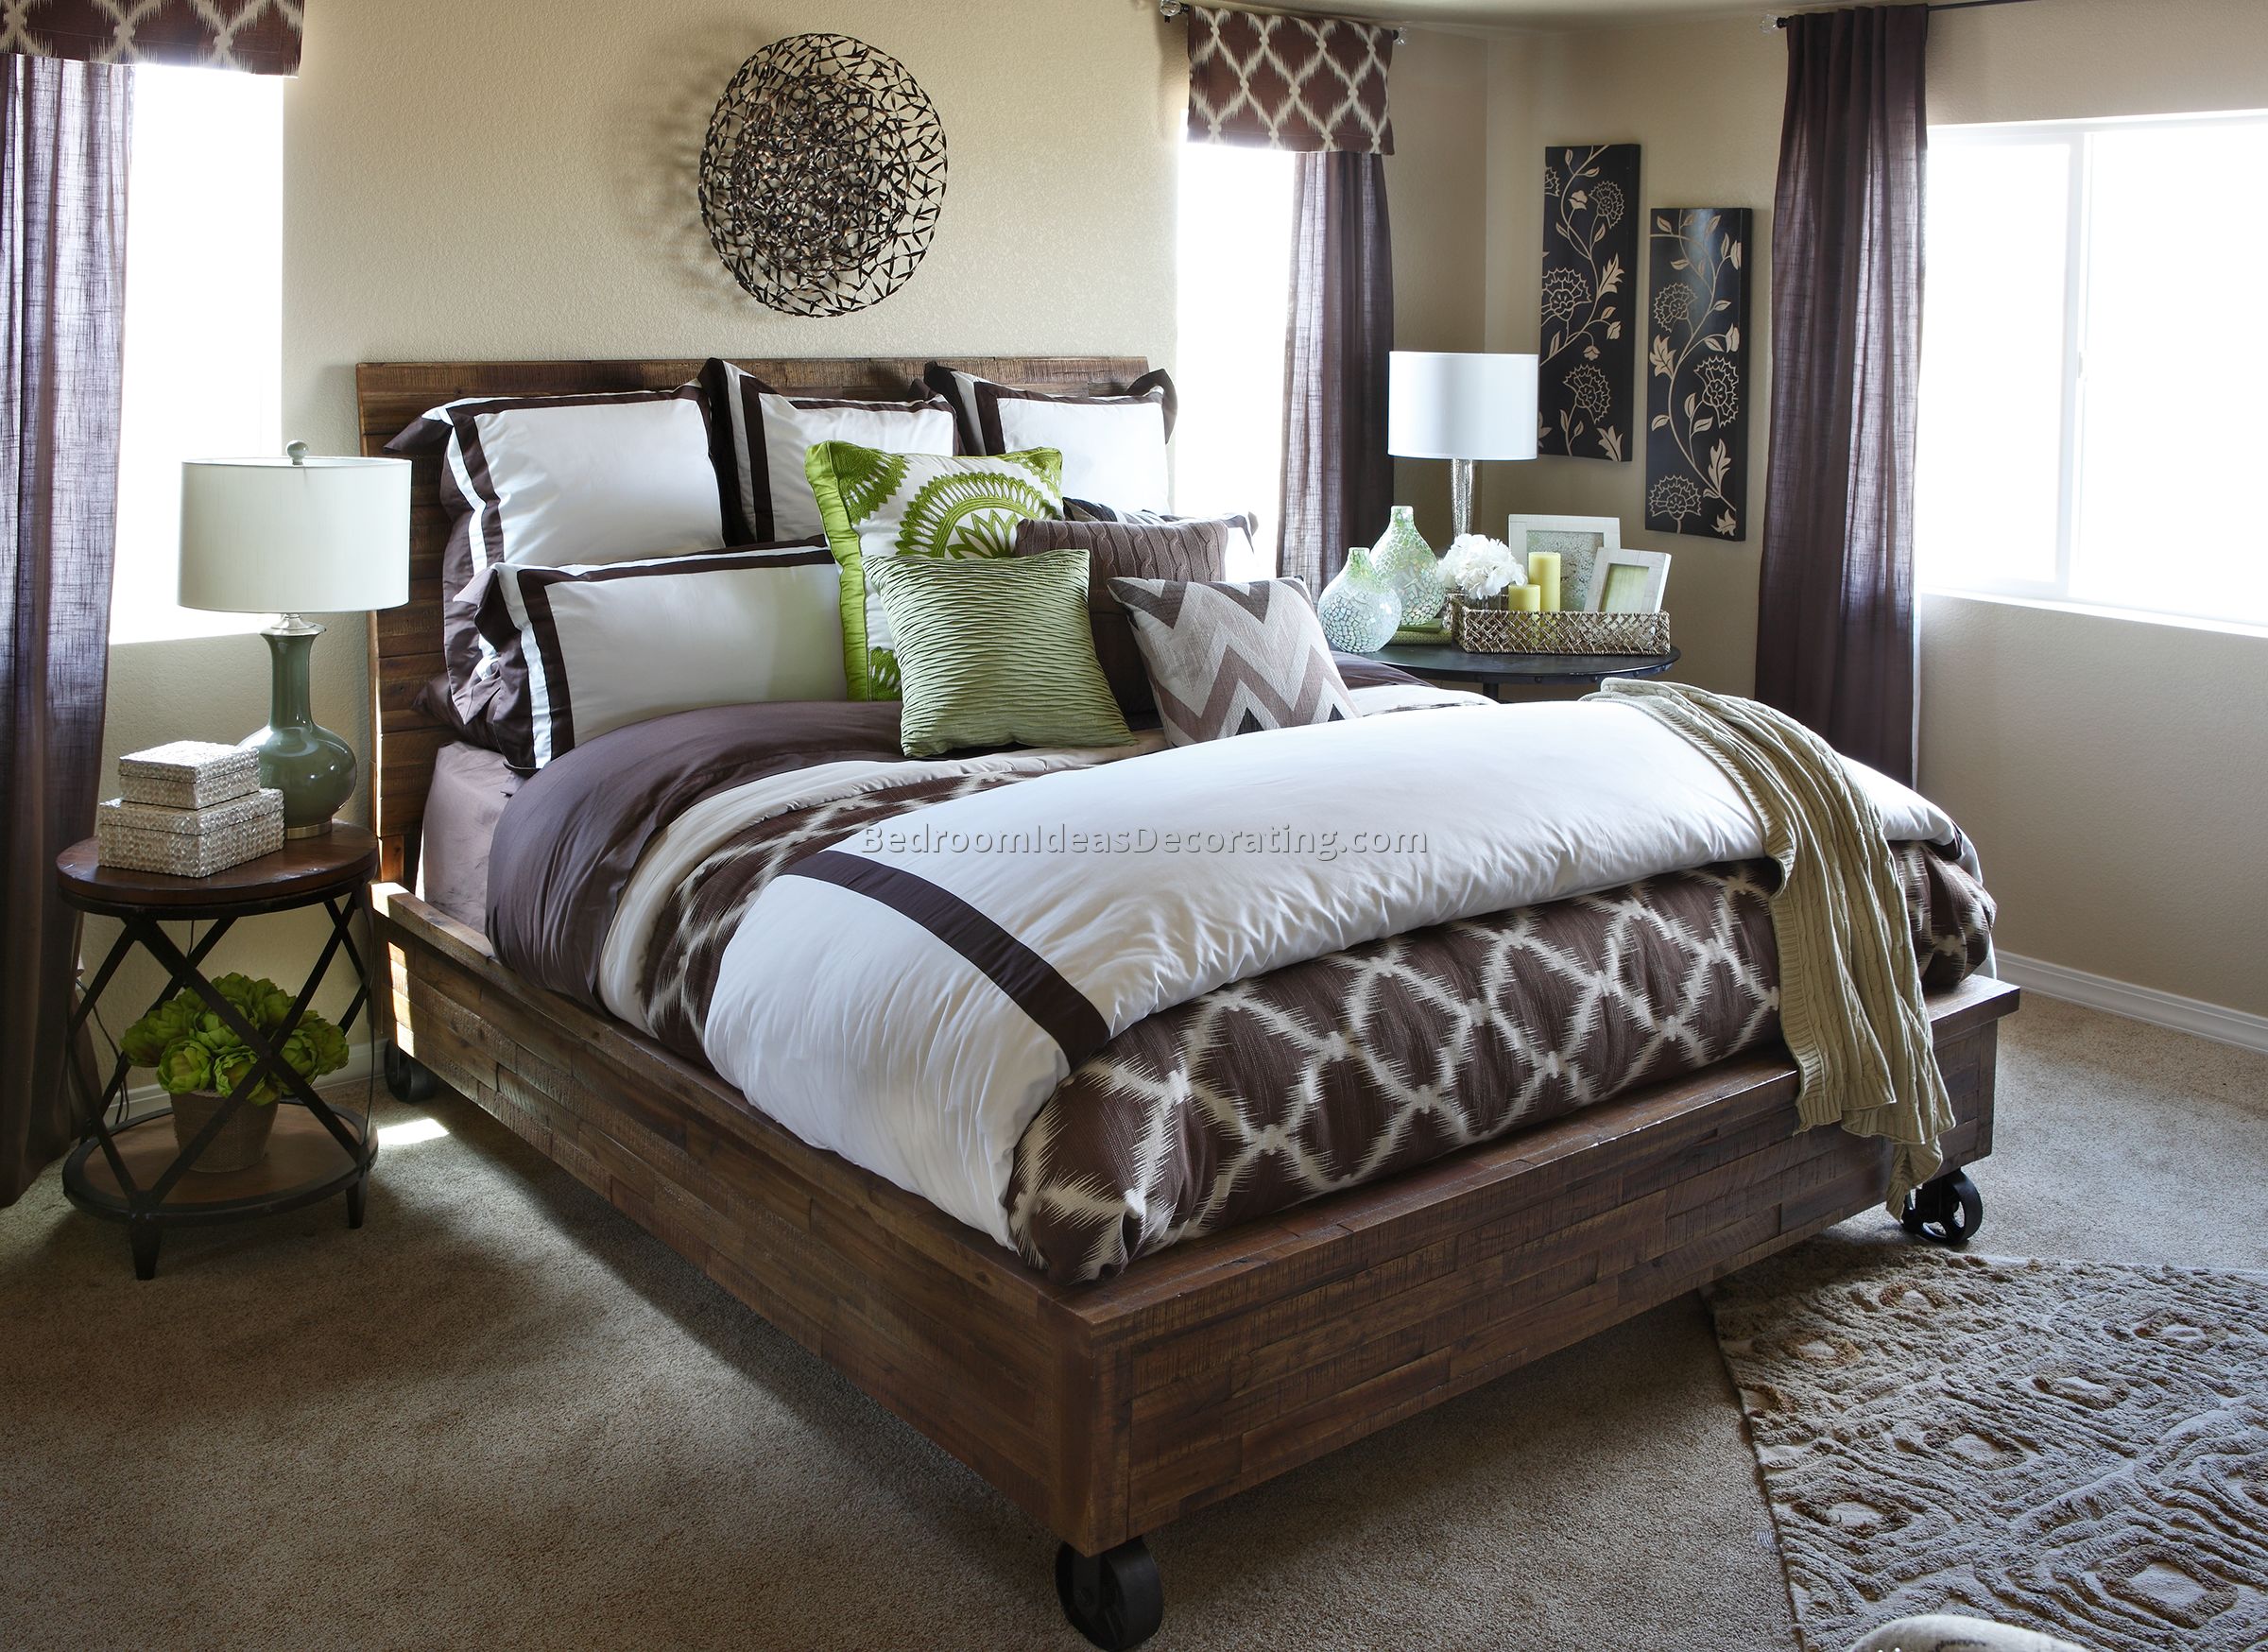 furniture row - bedroom colorado springs